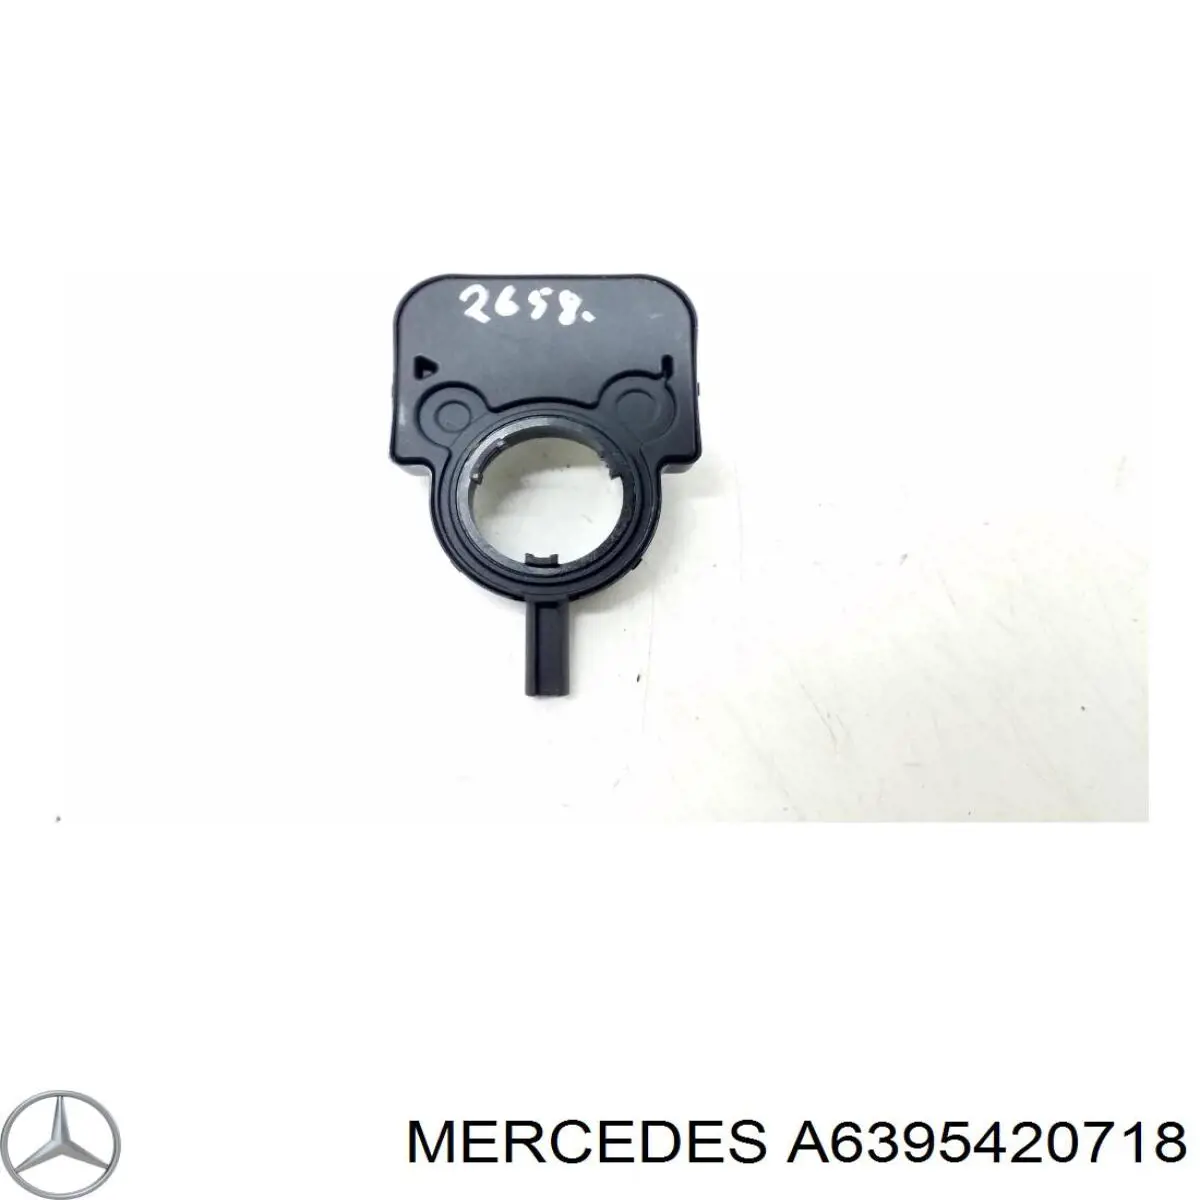 6395420718 Mercedes датчик угла поворота рулевого колеса